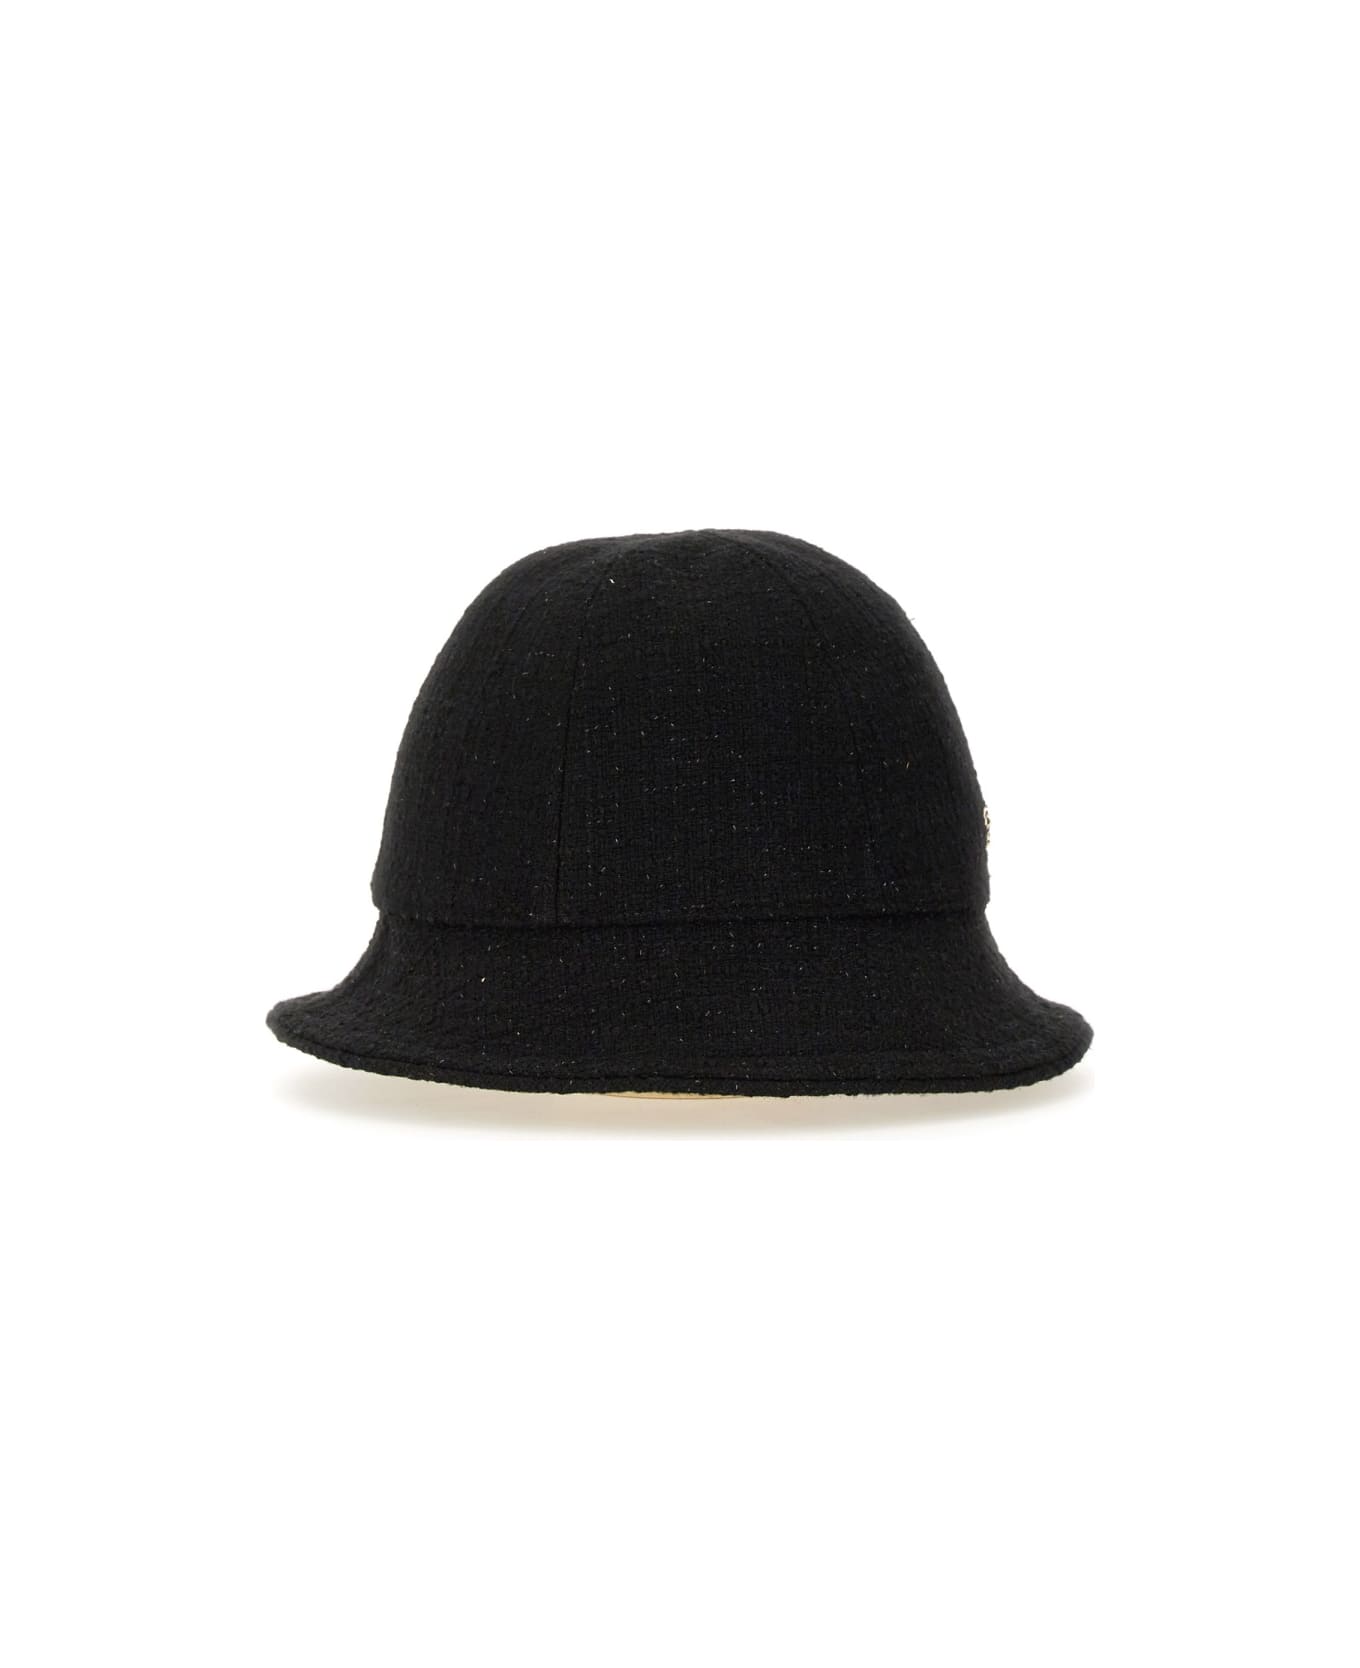 Helen Kaminski Hat "carmen" - BLACK 帽子